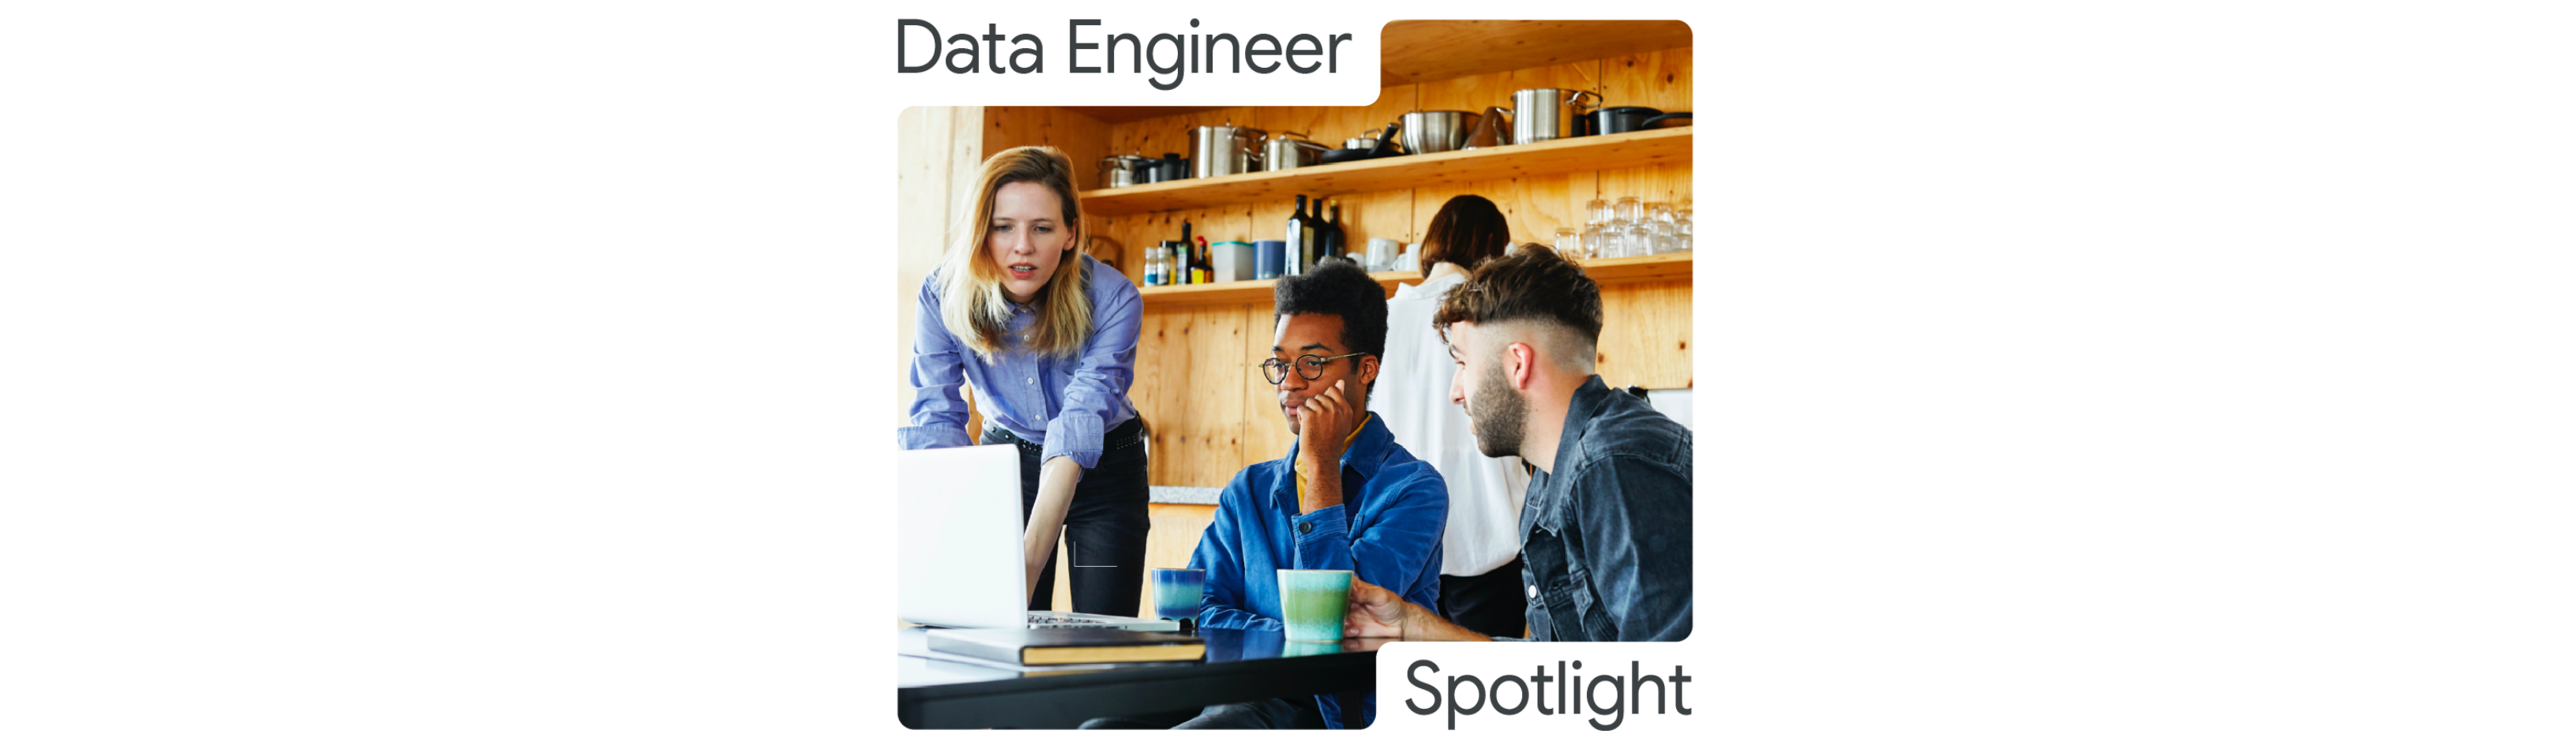 data-engineer-spotlight.png